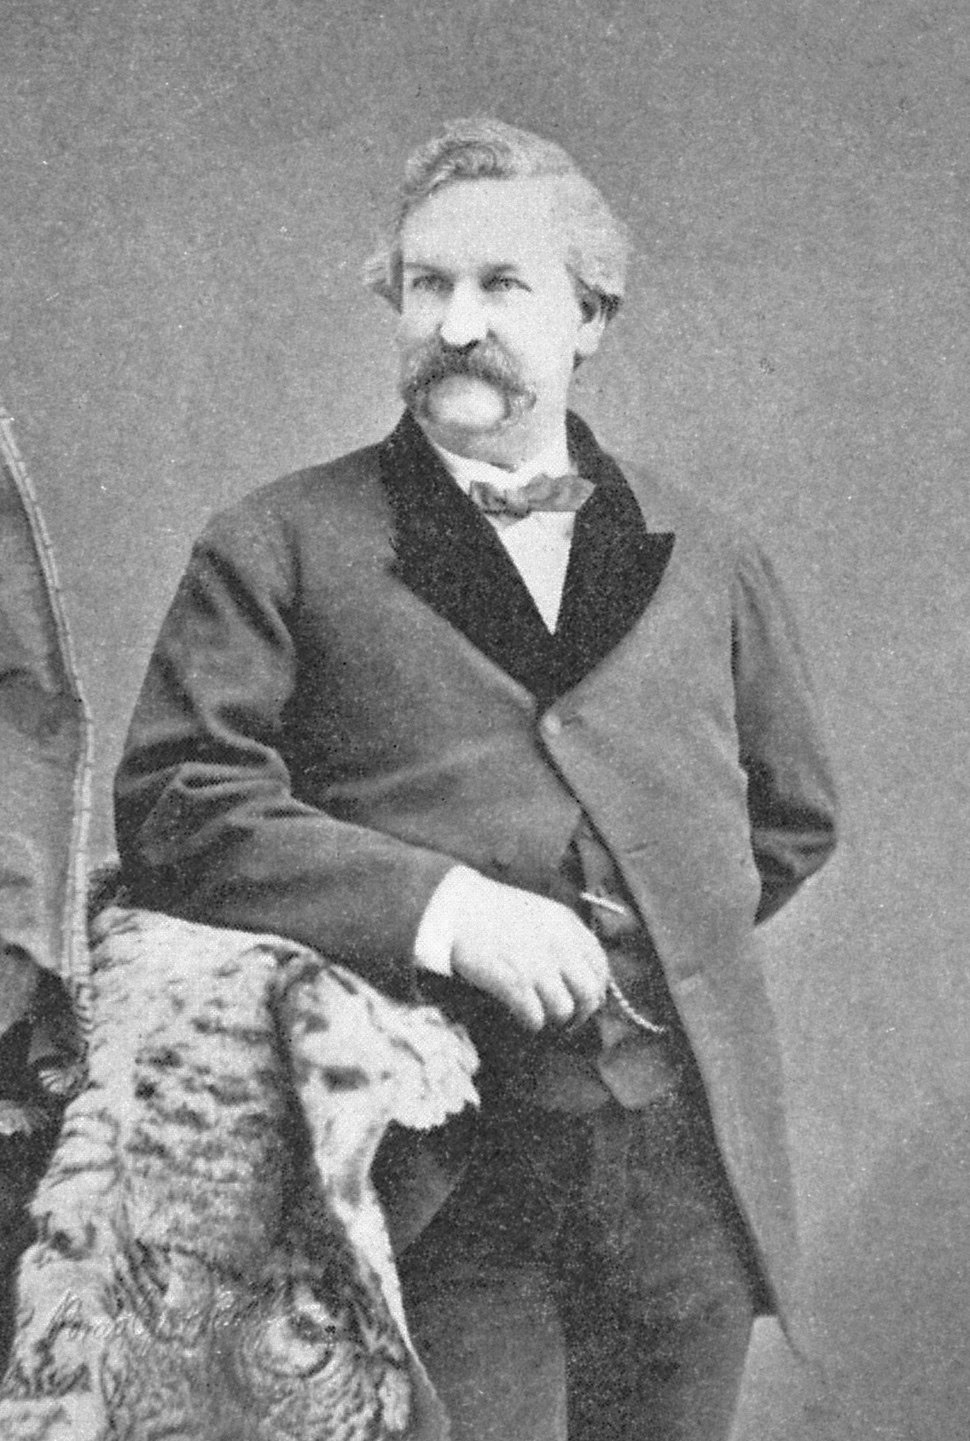 في سبعينات القرن التاسع عشر، كان (هاري إدواردس) ممثلاً ضمن شركة «مسرح كاليفورنيا»، كما كان من الآباء المؤسسين للنادي البوهيمي ورئيس قسم علوم الحيوان في أكاديمية كاليفورنيا للعلوم.